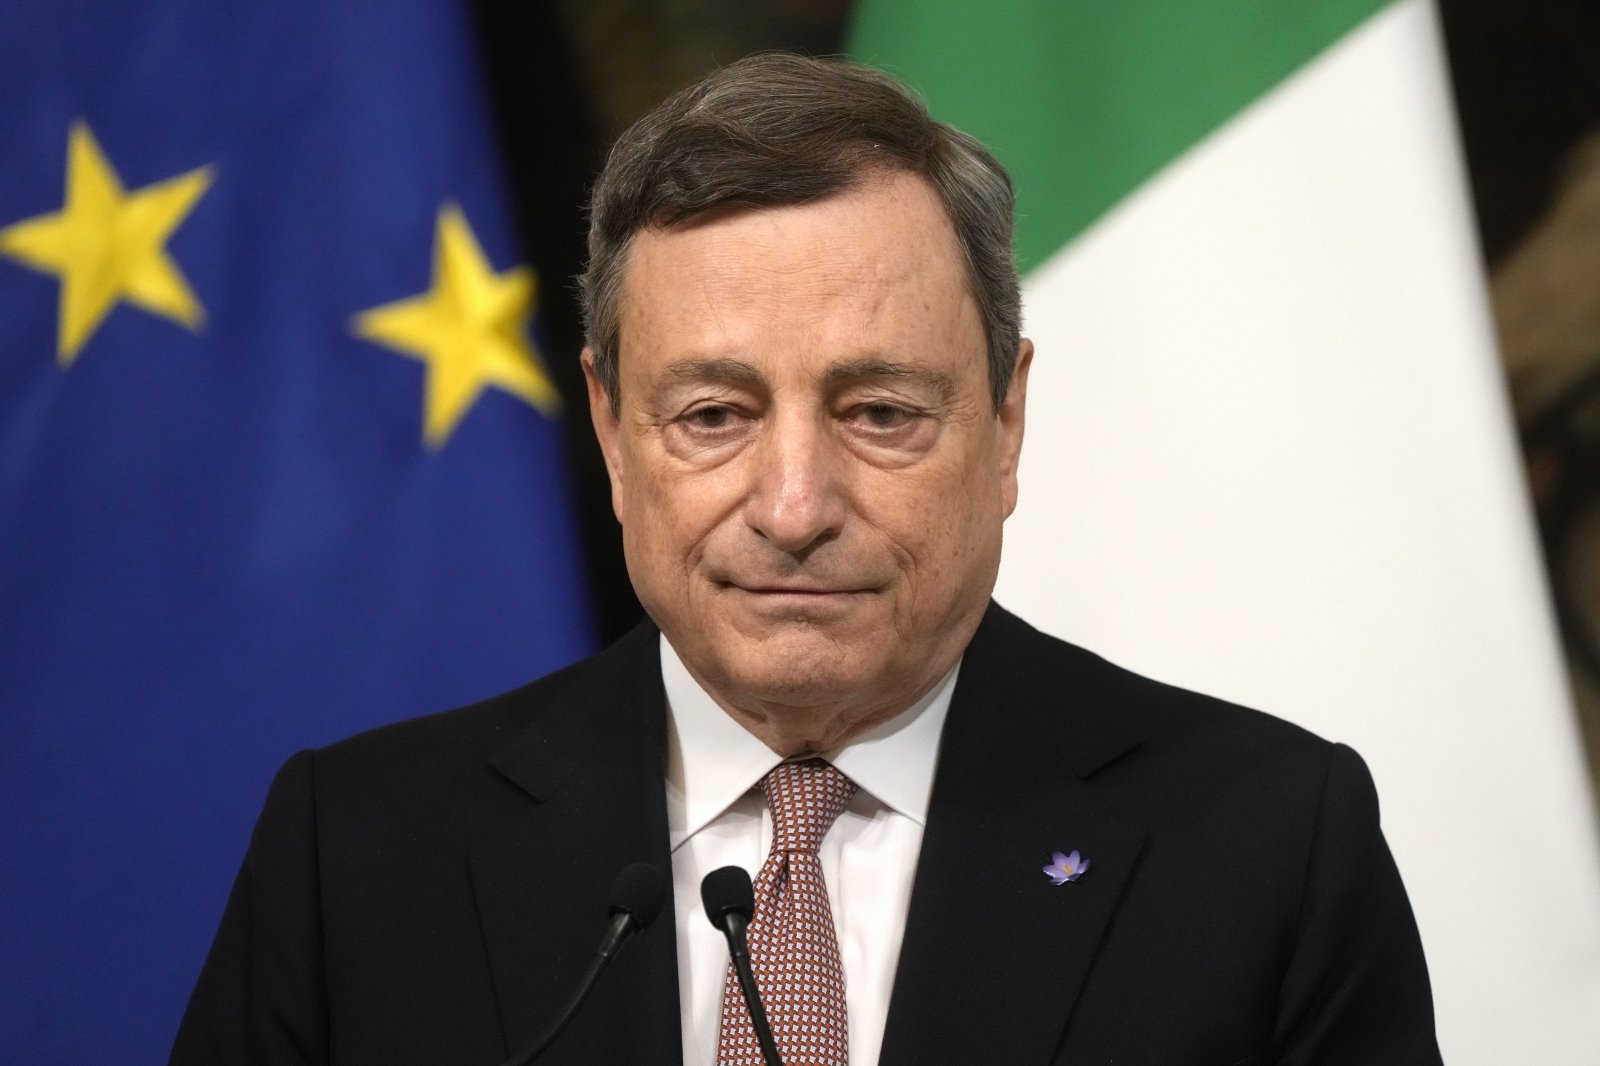 Si dimette il premier Draghi – DELFI